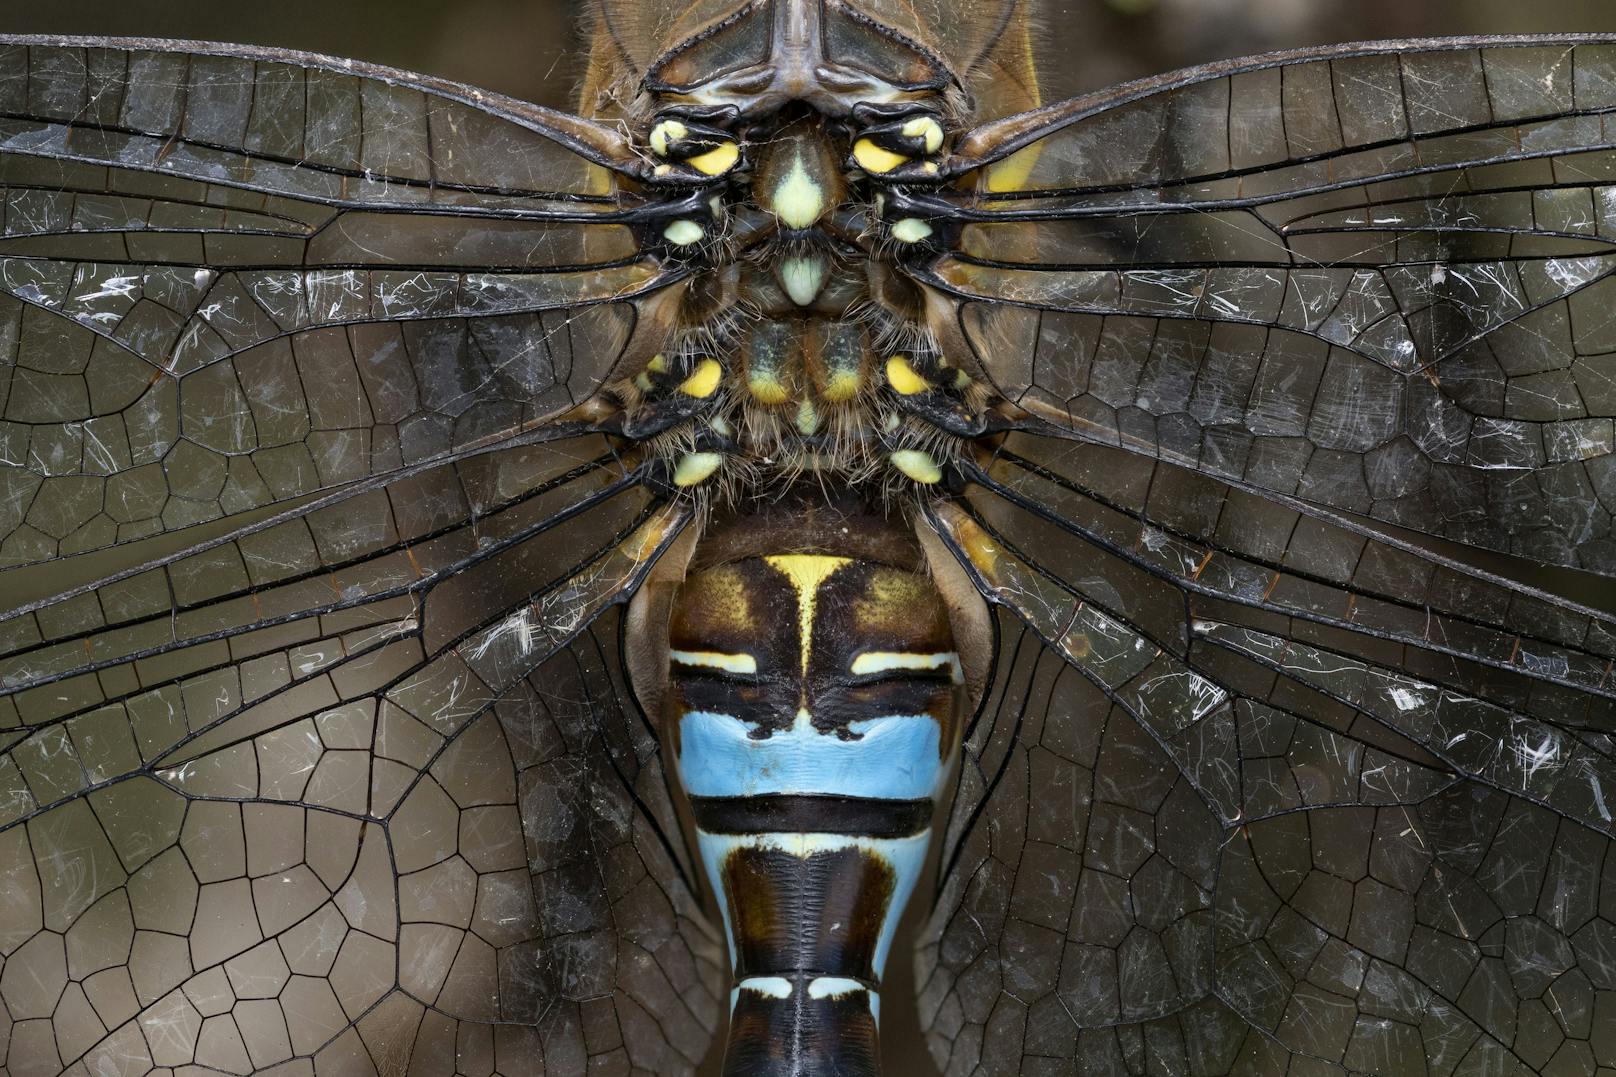 Diese Nahaufnahme einer Libelle war das gekürte Siegerbild. Hättet ihr auch so entschieden? 